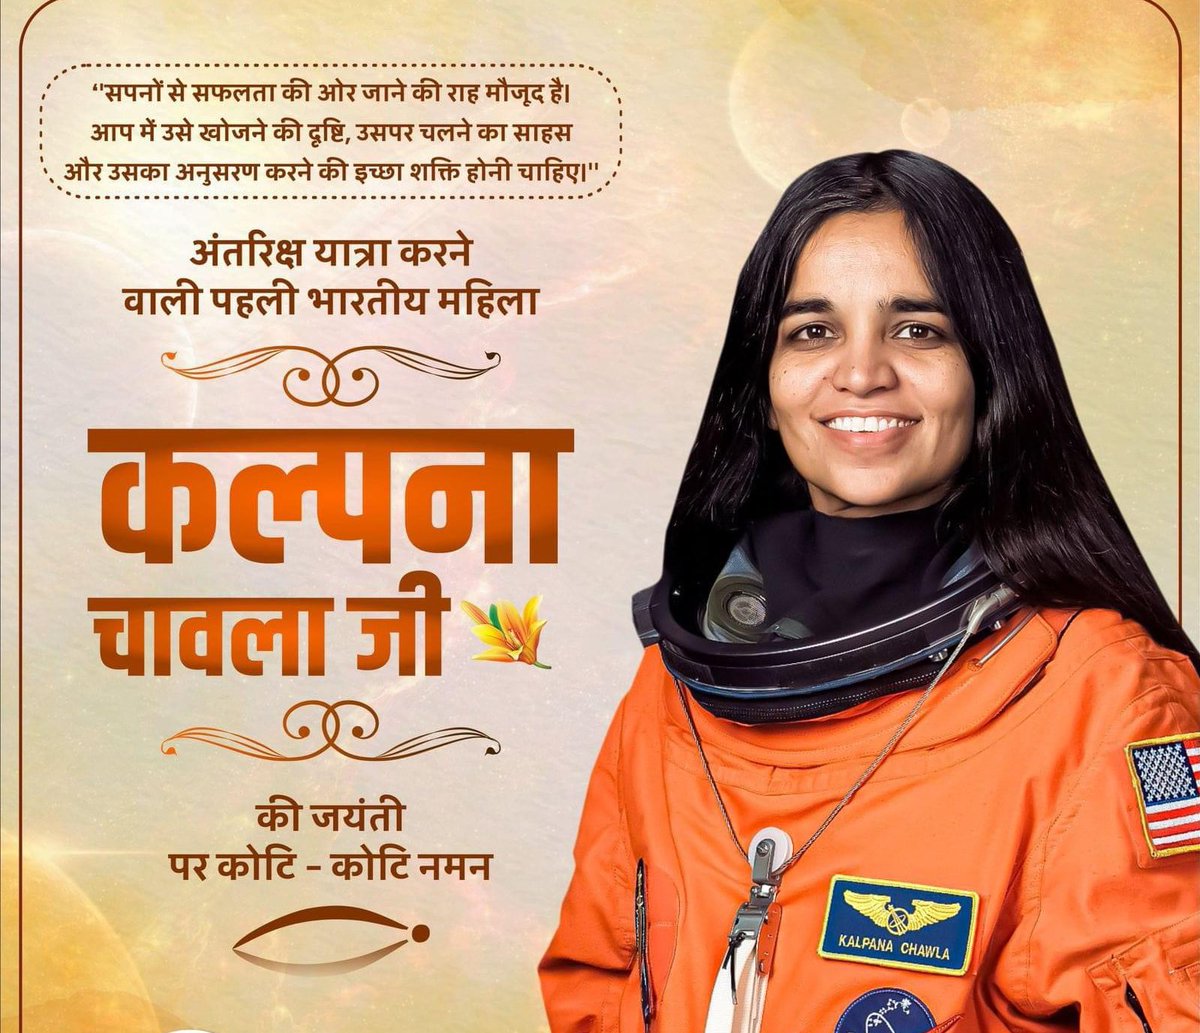 दुनिया भर में देश का मानवर्धन करने वाली भारत की बेटी, समस्त नारियों के लिए प्रेरणा स्रोत, साहस व शक्ति की प्रतिमूर्ति, अंतरिक्ष शटल मिशन विशेषज्ञ एवं प्रथम भारतीय महिला अंतरिक्ष यात्री कल्पना चावला जी की जयंती पर उन्हें शत- शत नमन। 
#KalpanaChawla